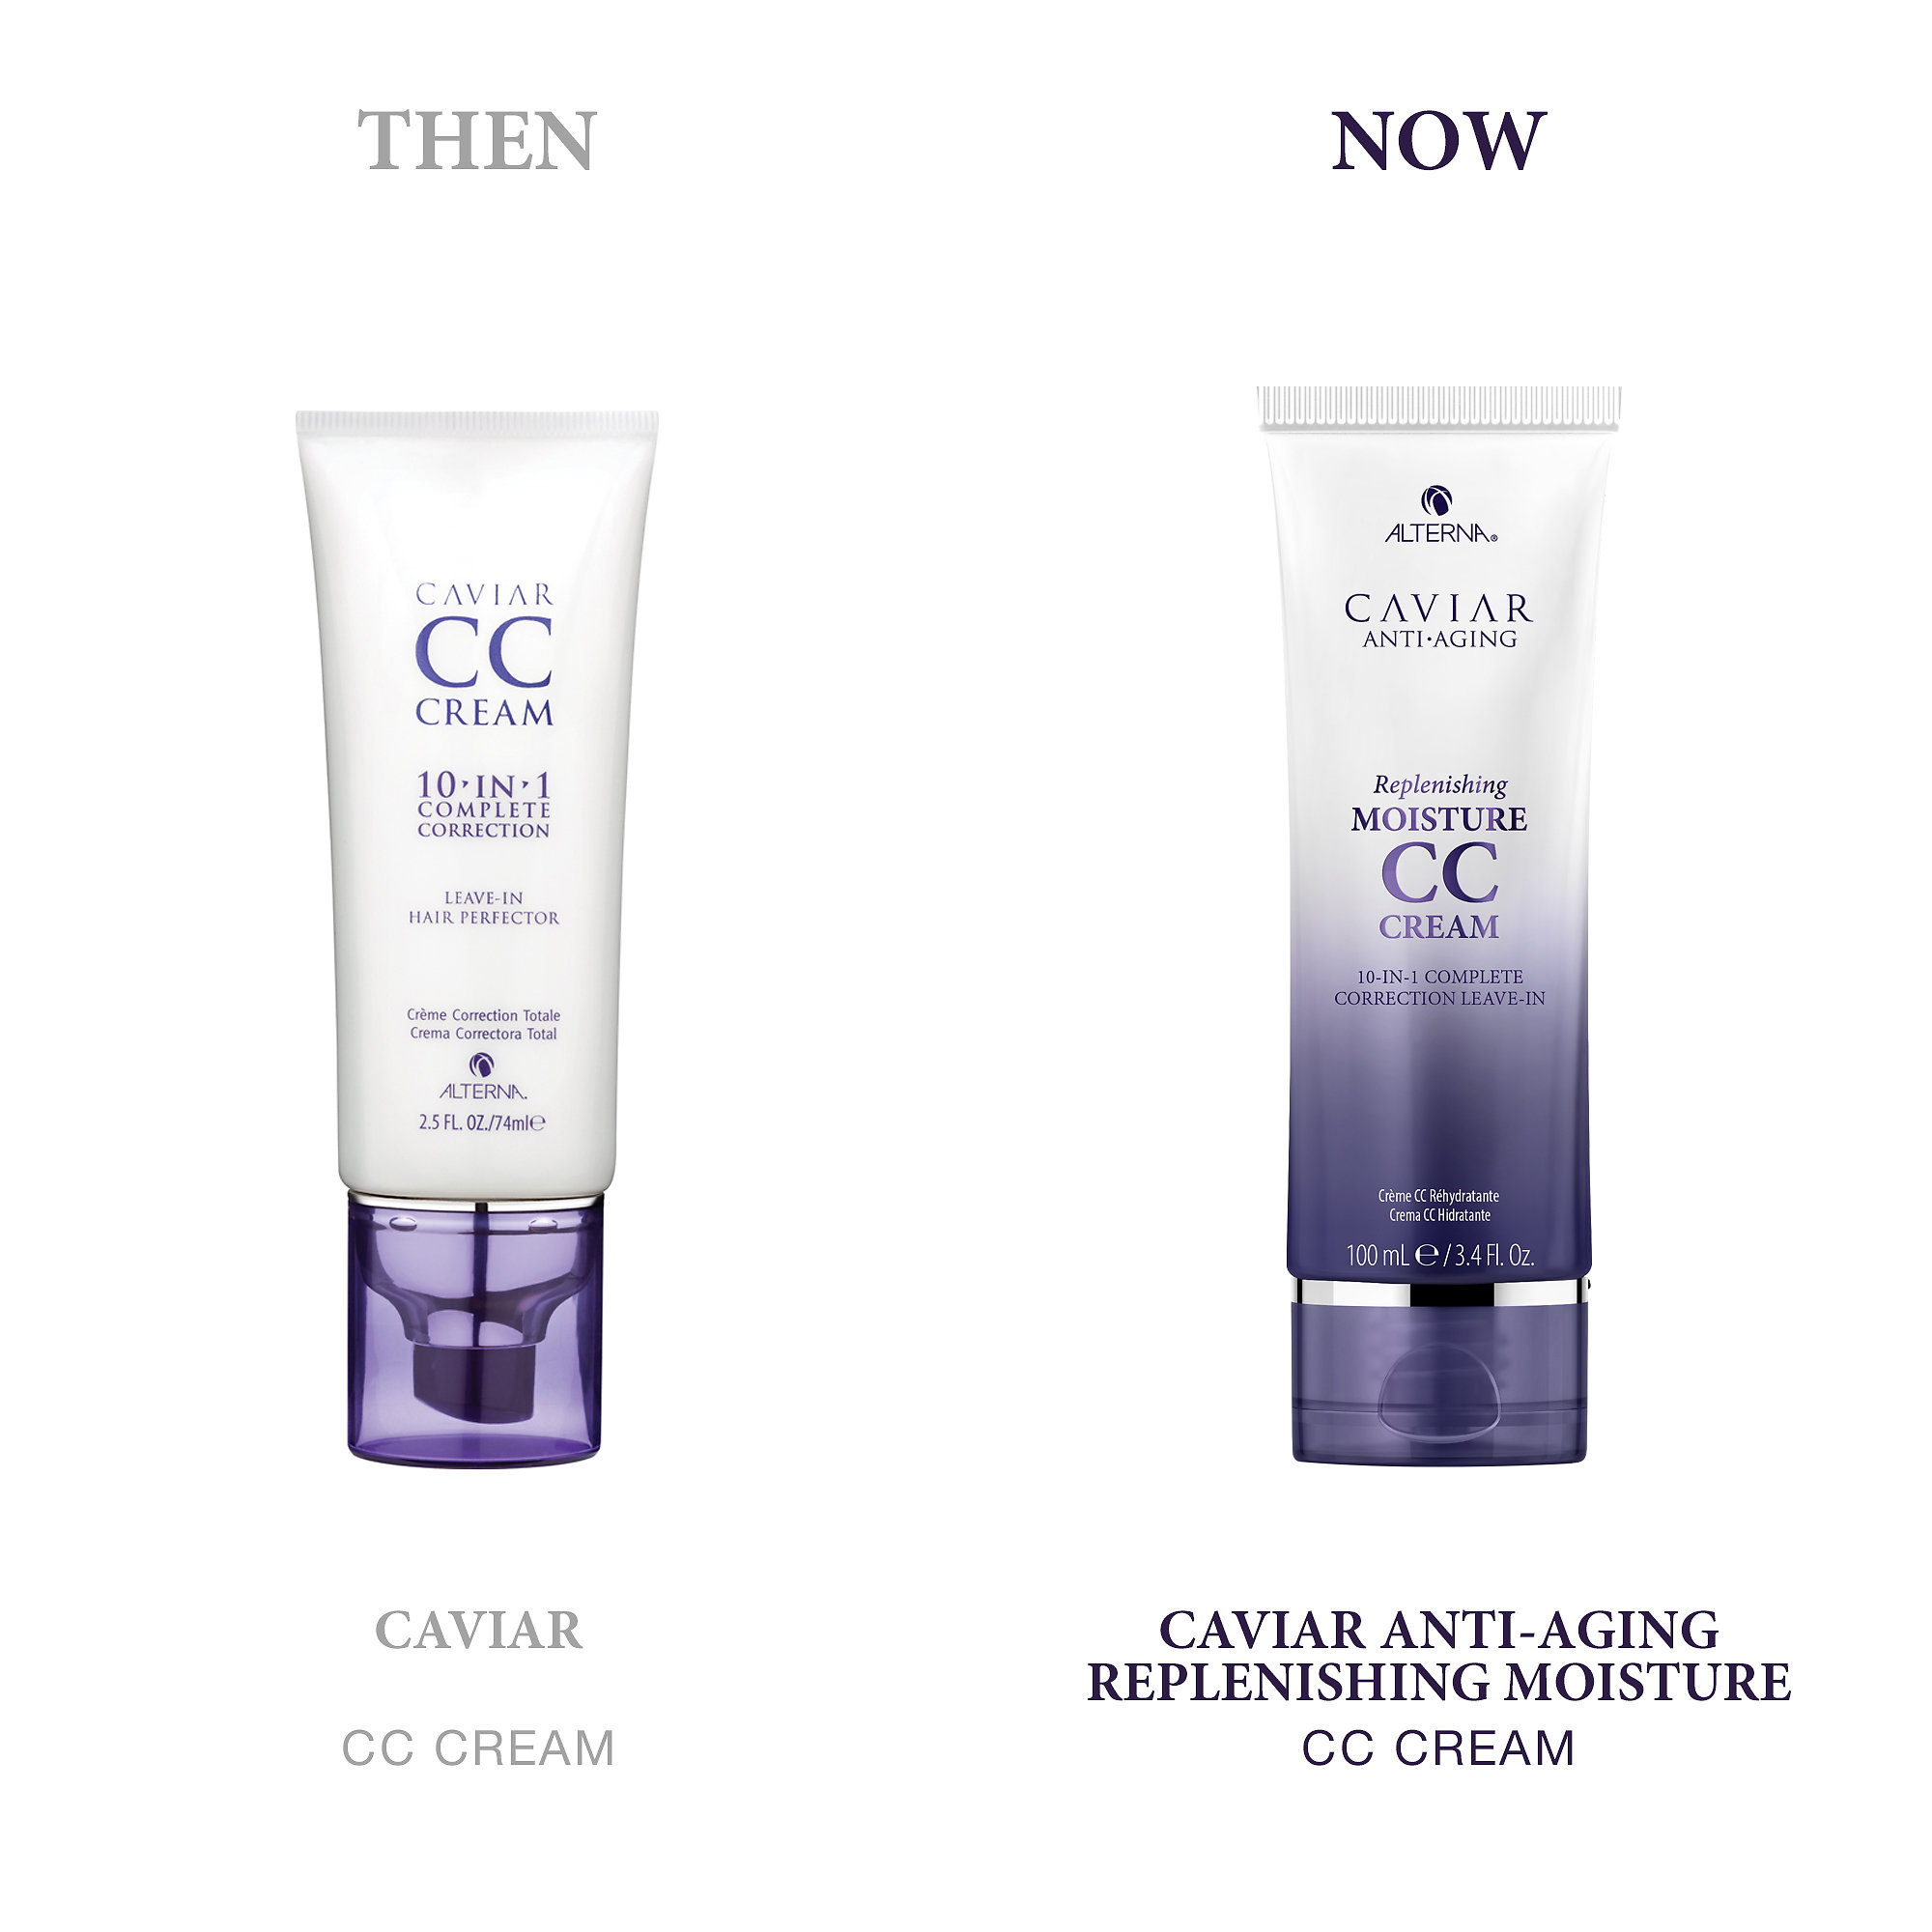 Caviar Replenishing Moisture CC Cream | Termoochronny krem wygładzający i stylizujący 100ml